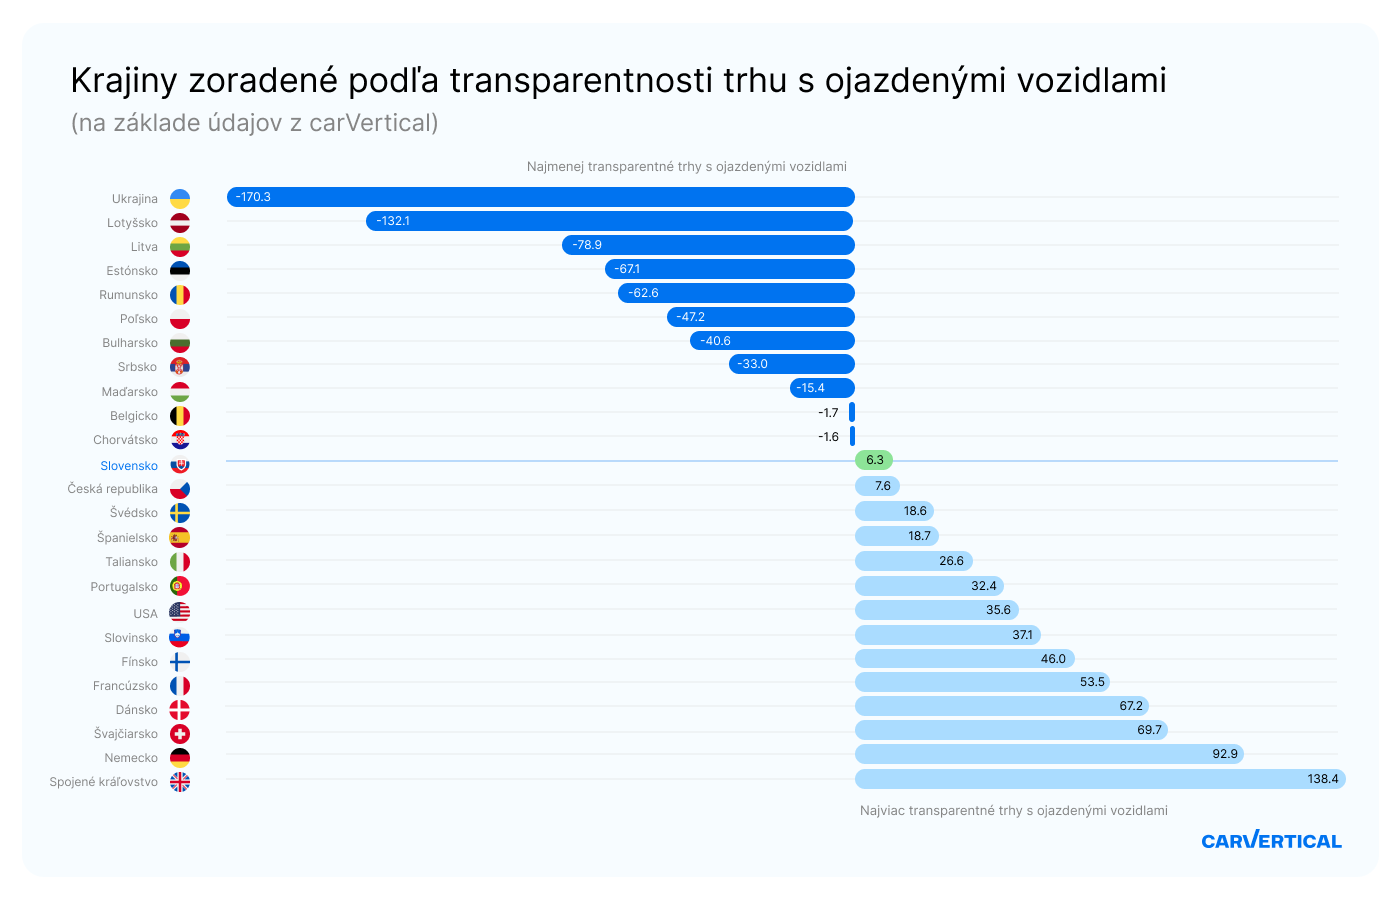 Štúdia odhalila, že transparentnosť  trhu s ojazdenými vozidlami na Slovensku je priemerná